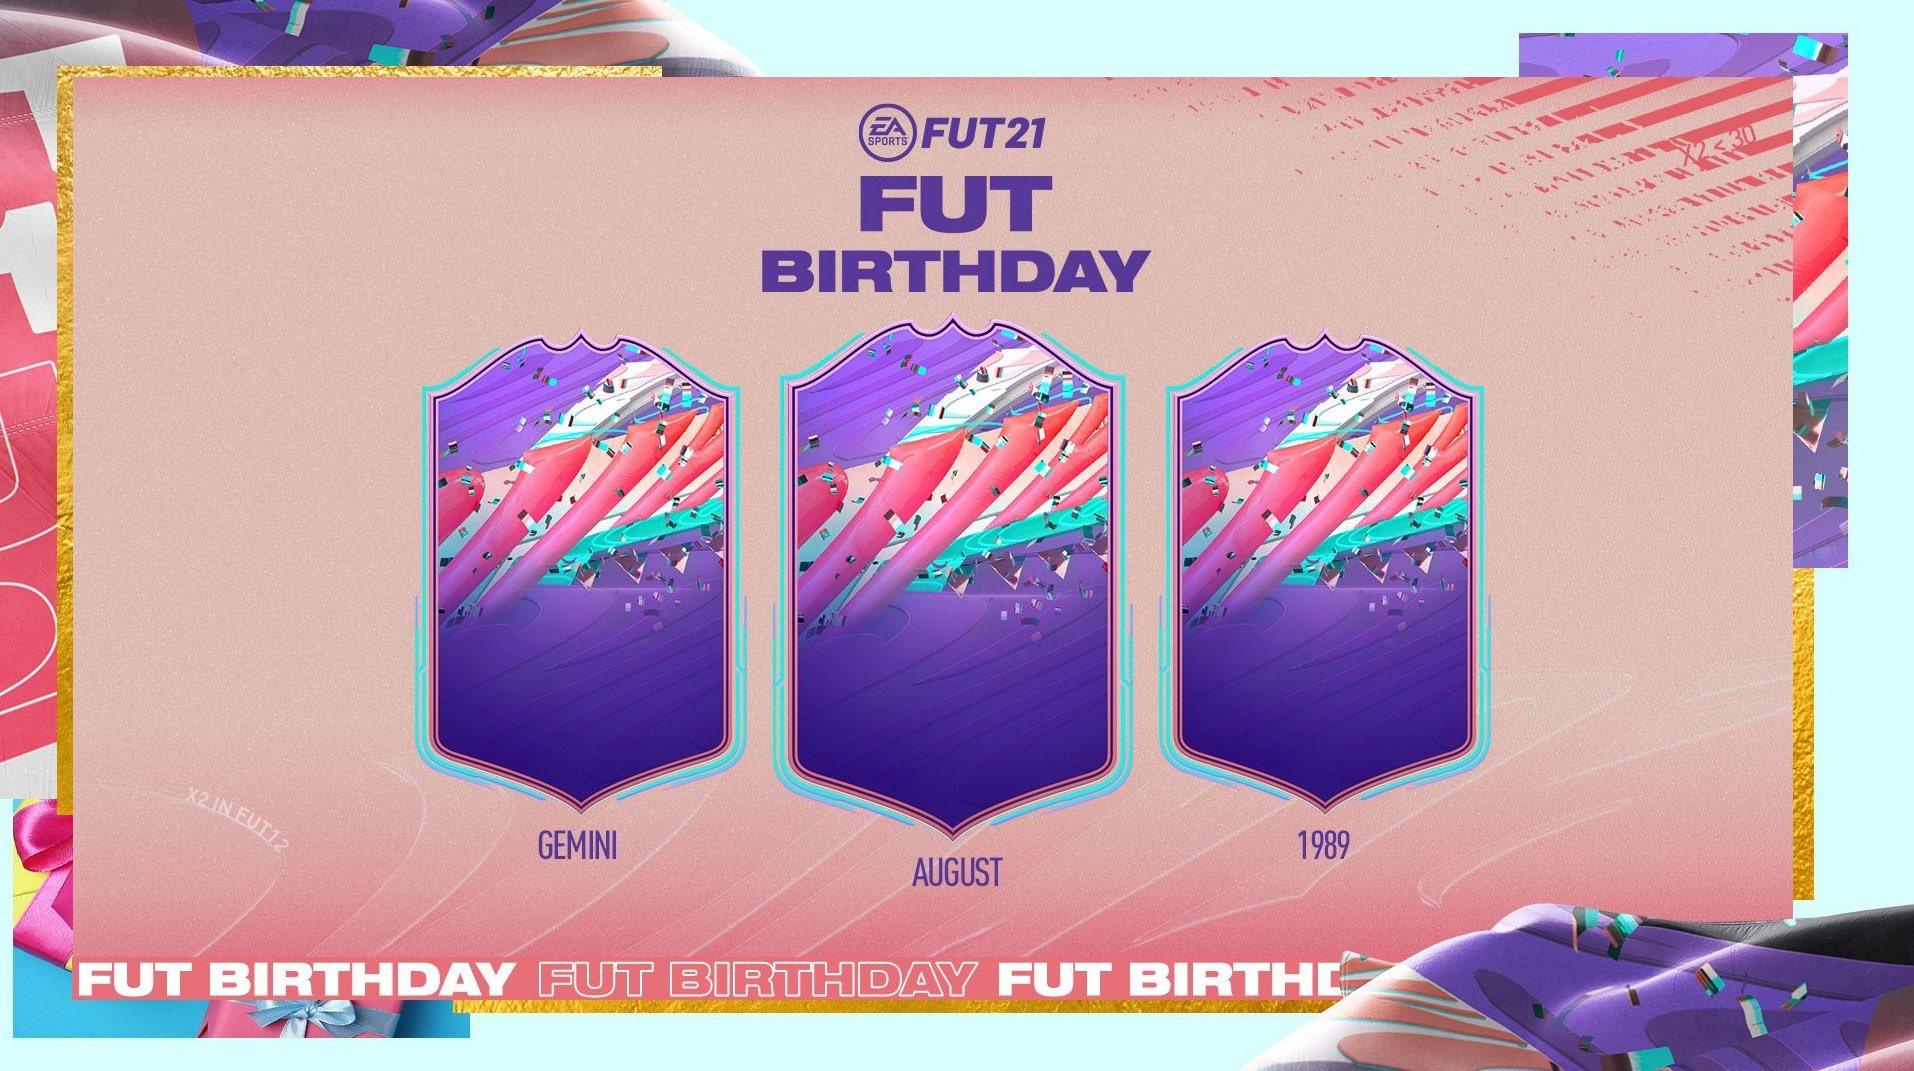 FIFA 21 FUT Birthday teaser